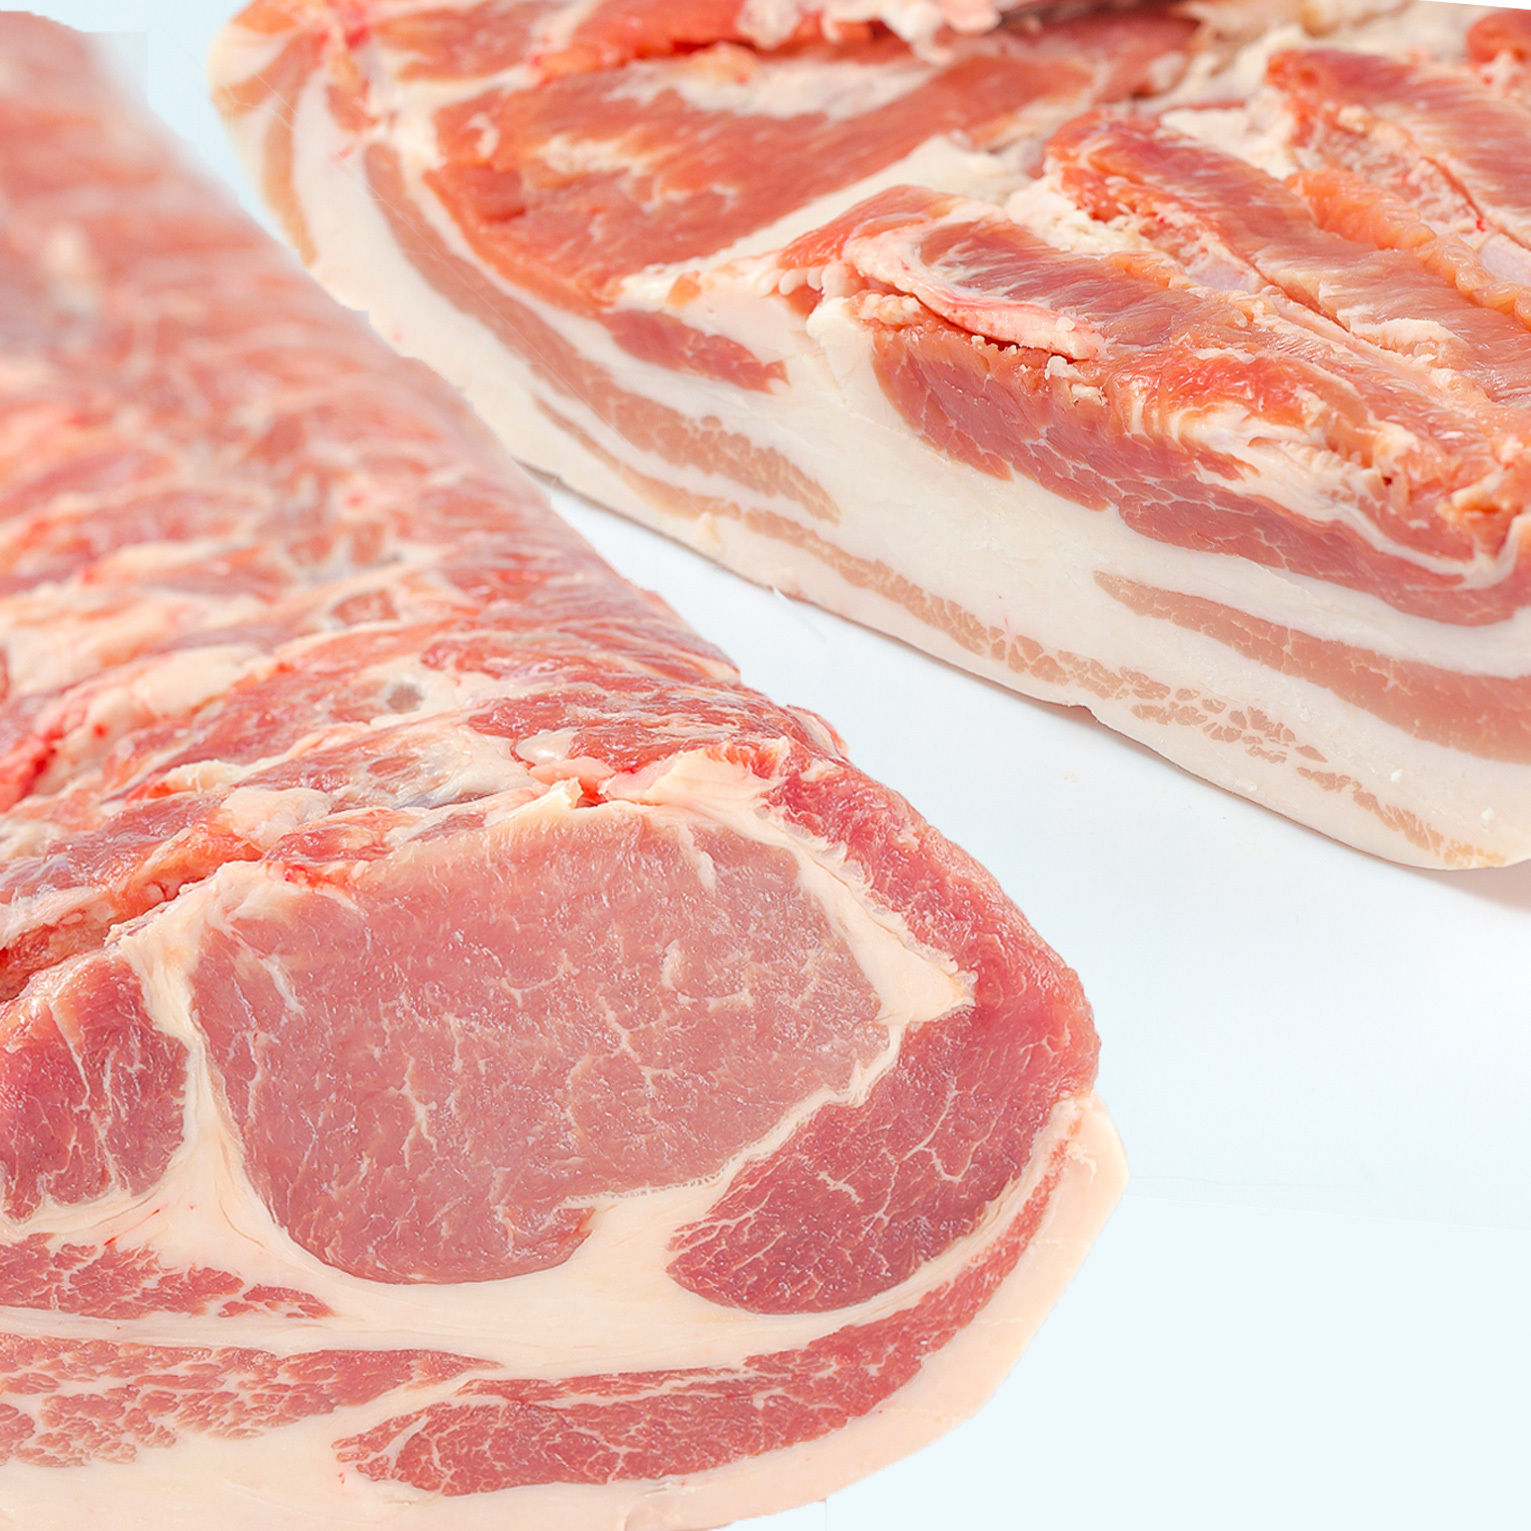 [冷凍]セット:かたまり肉:ロース&バラ[白金豚]二種詰め 冷凍 ロース+バラ各500g塊(計1kg)